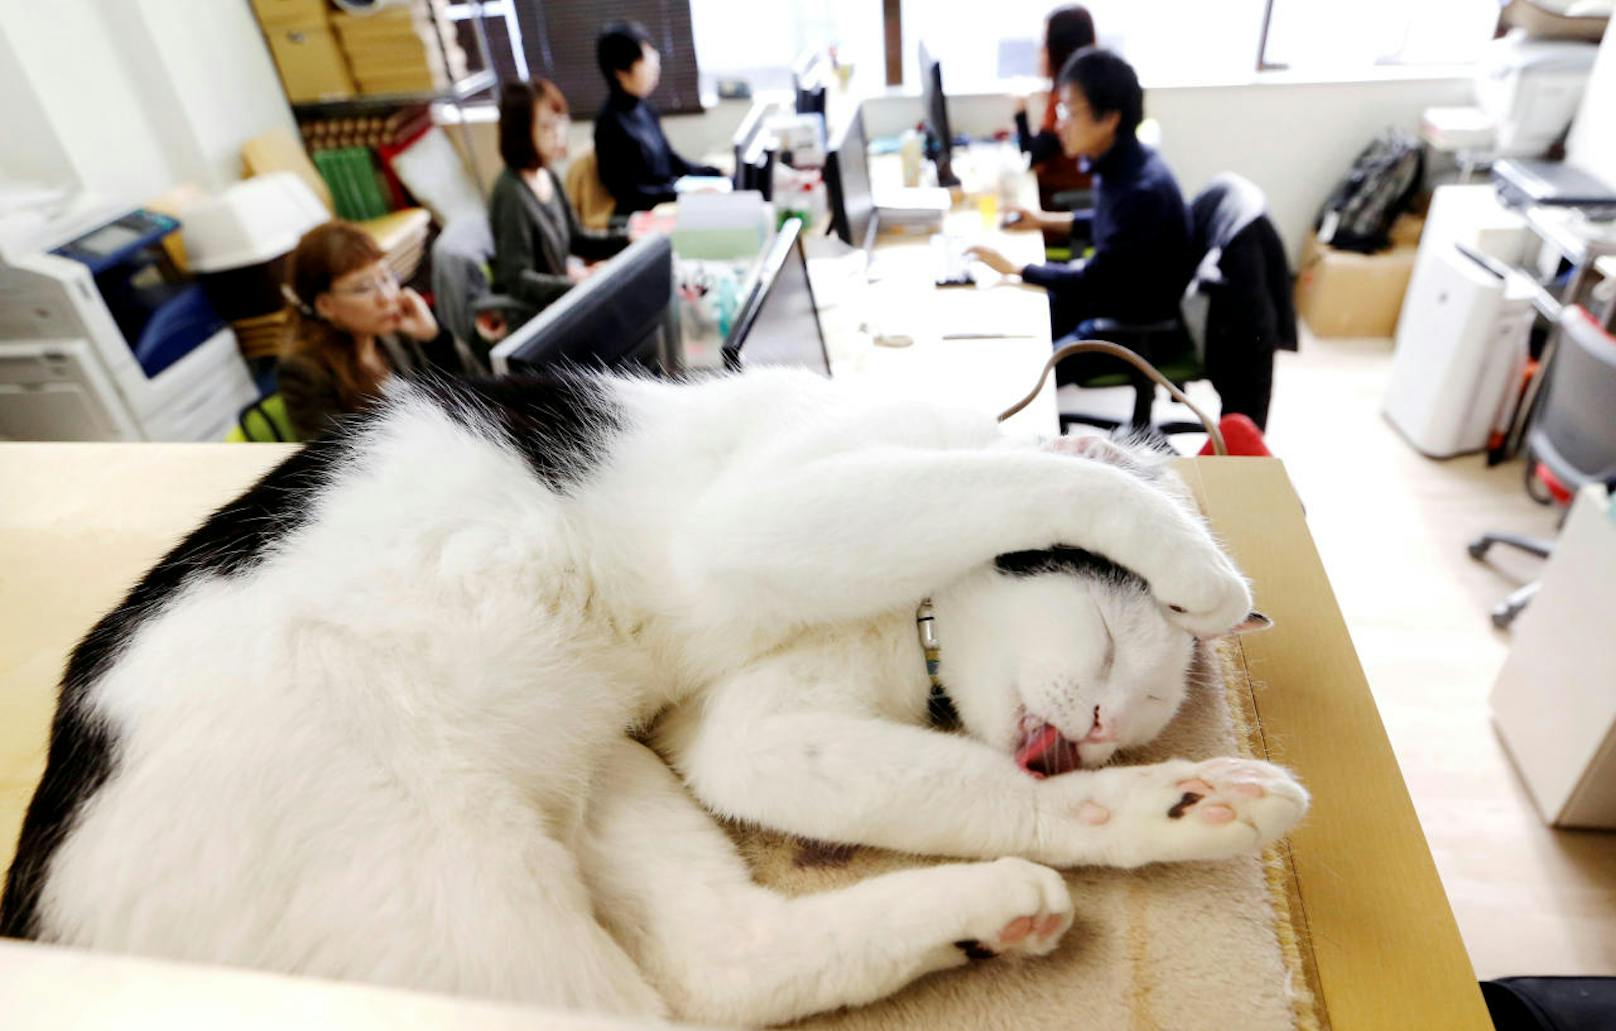 Stress im Büro? In diesem japanischen IT-Unternehmen kann man zum seelischen Ausgleich einfach mit dem pelzigen Kollegen kuscheln.